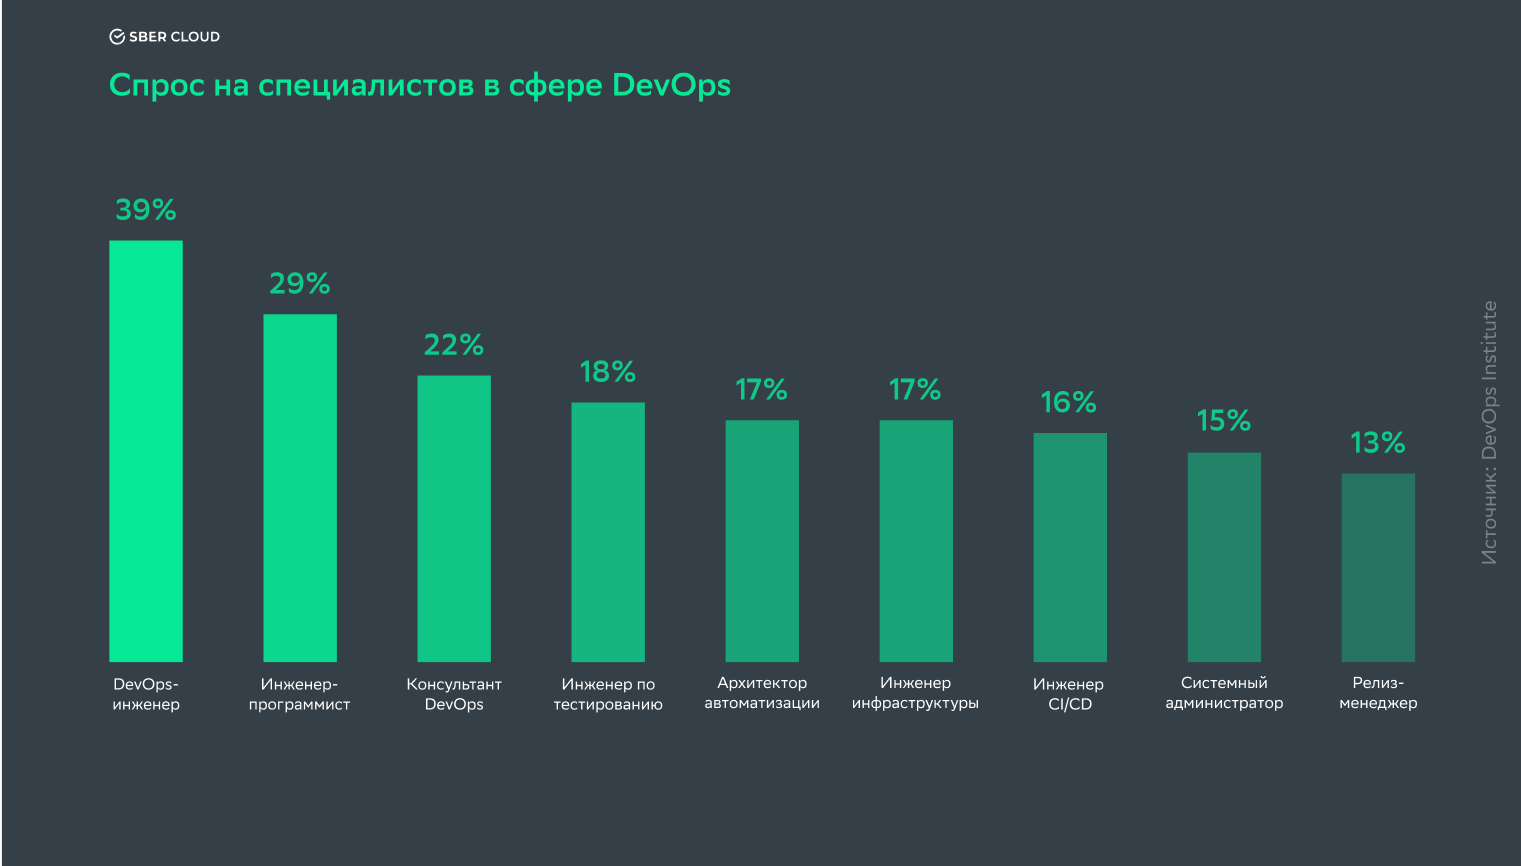 Спрос на специалистов в сфере DevOps по данным отчета DevOps Institute Upskilling: Enterprise DevOps Skills Report за 2019 год